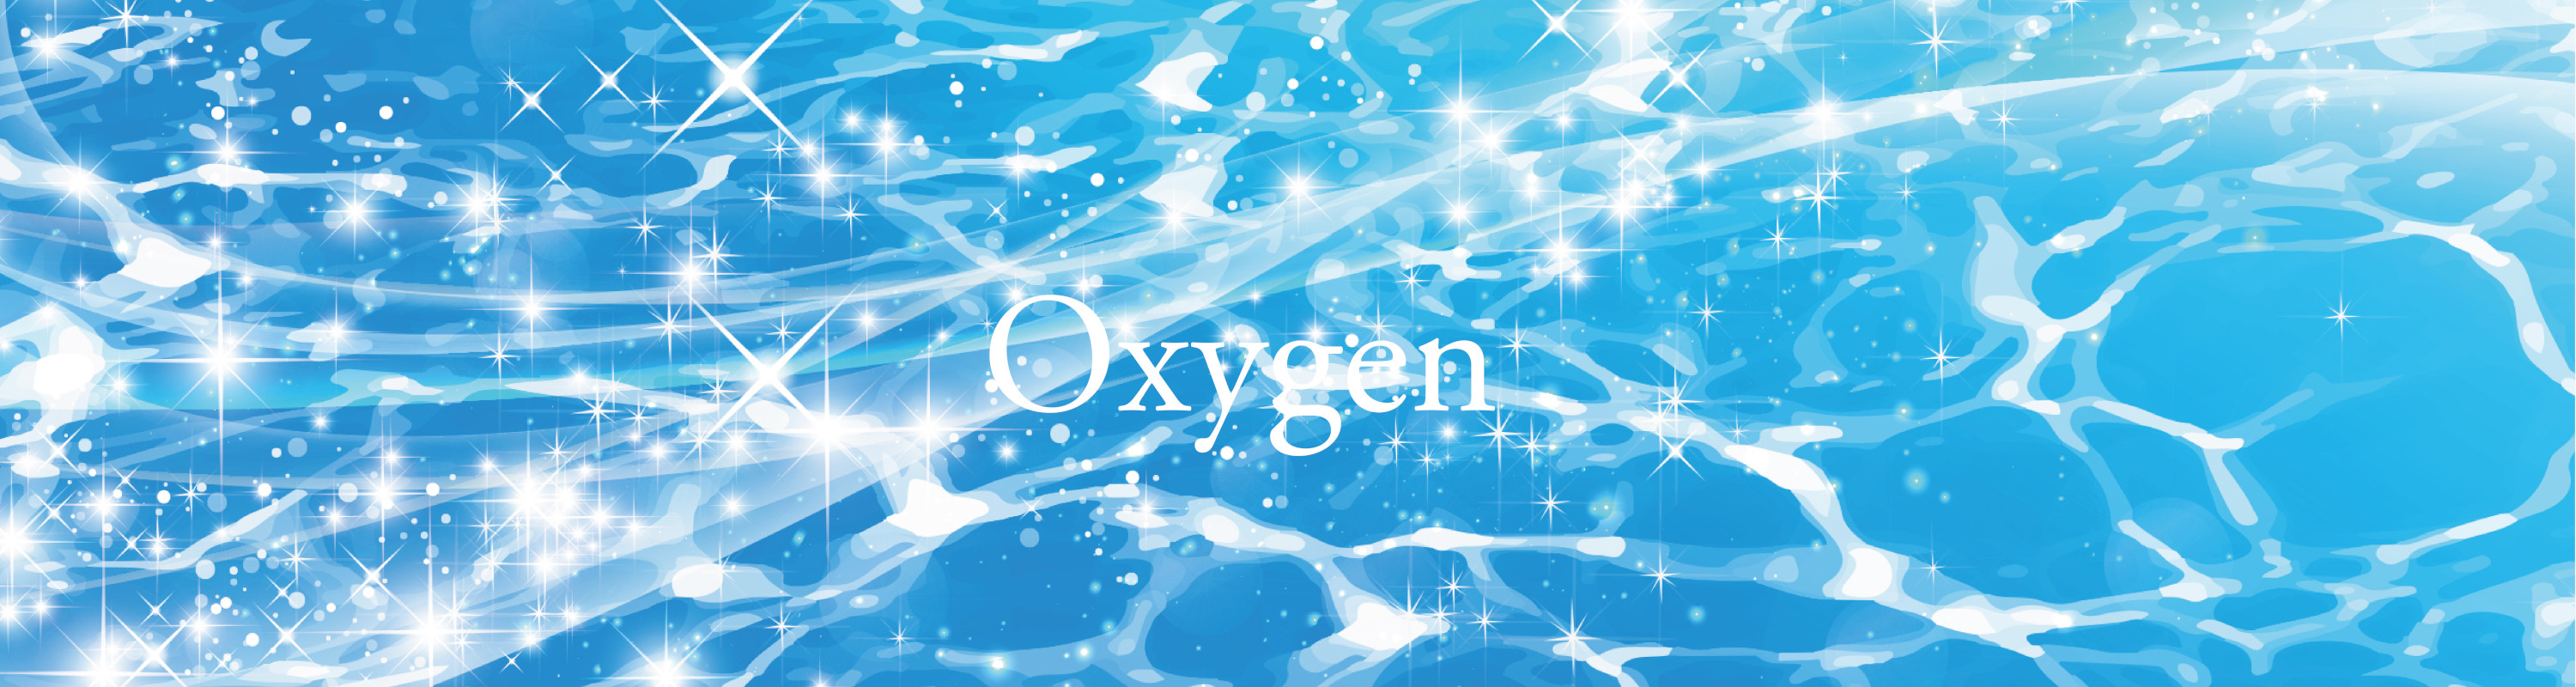 高濃度酸素発生装置 oxygen